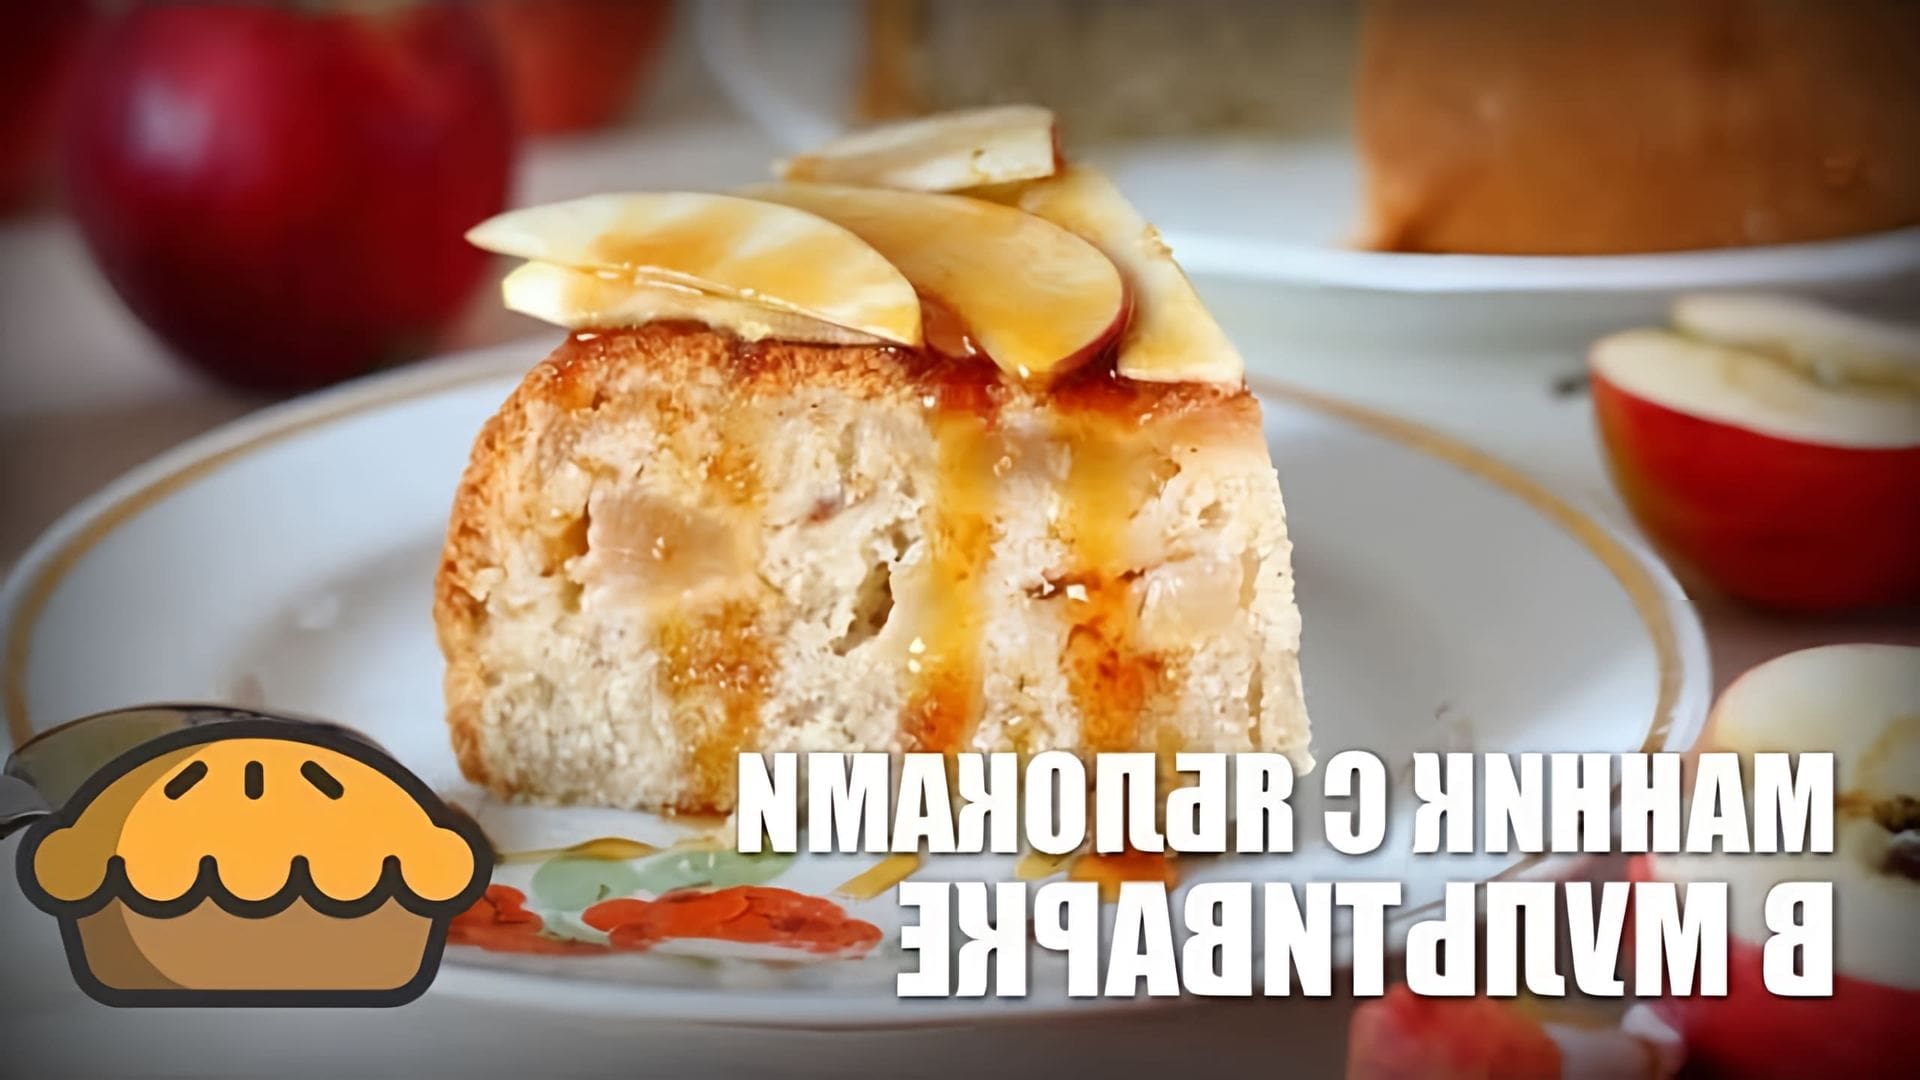 В этом видео демонстрируется рецепт приготовления манника с яблоками в мультиварке